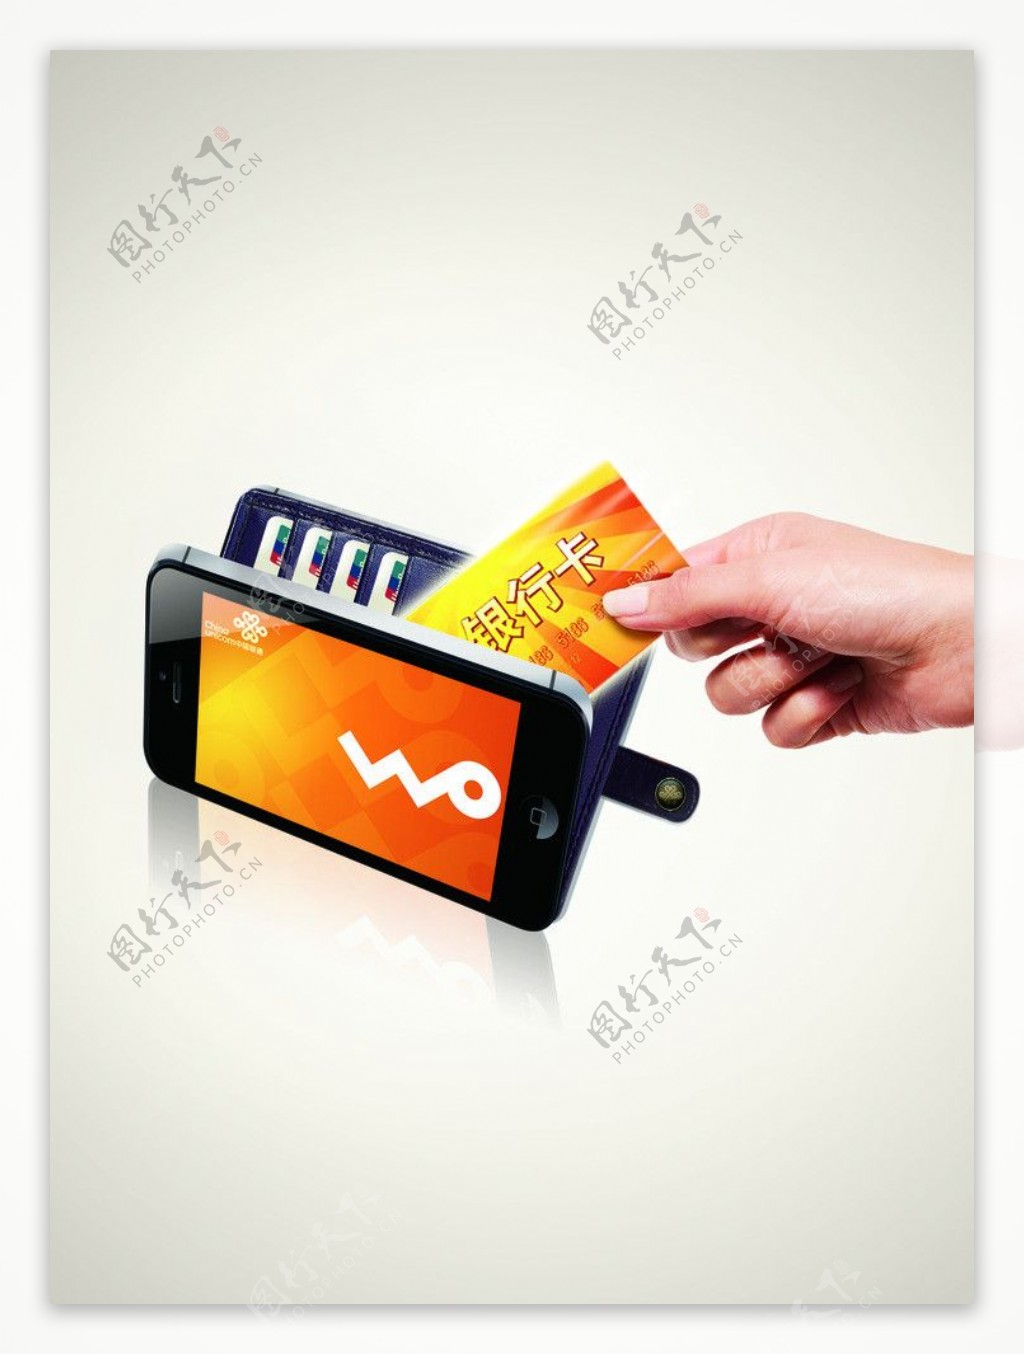 手机电子钱包刷卡图片